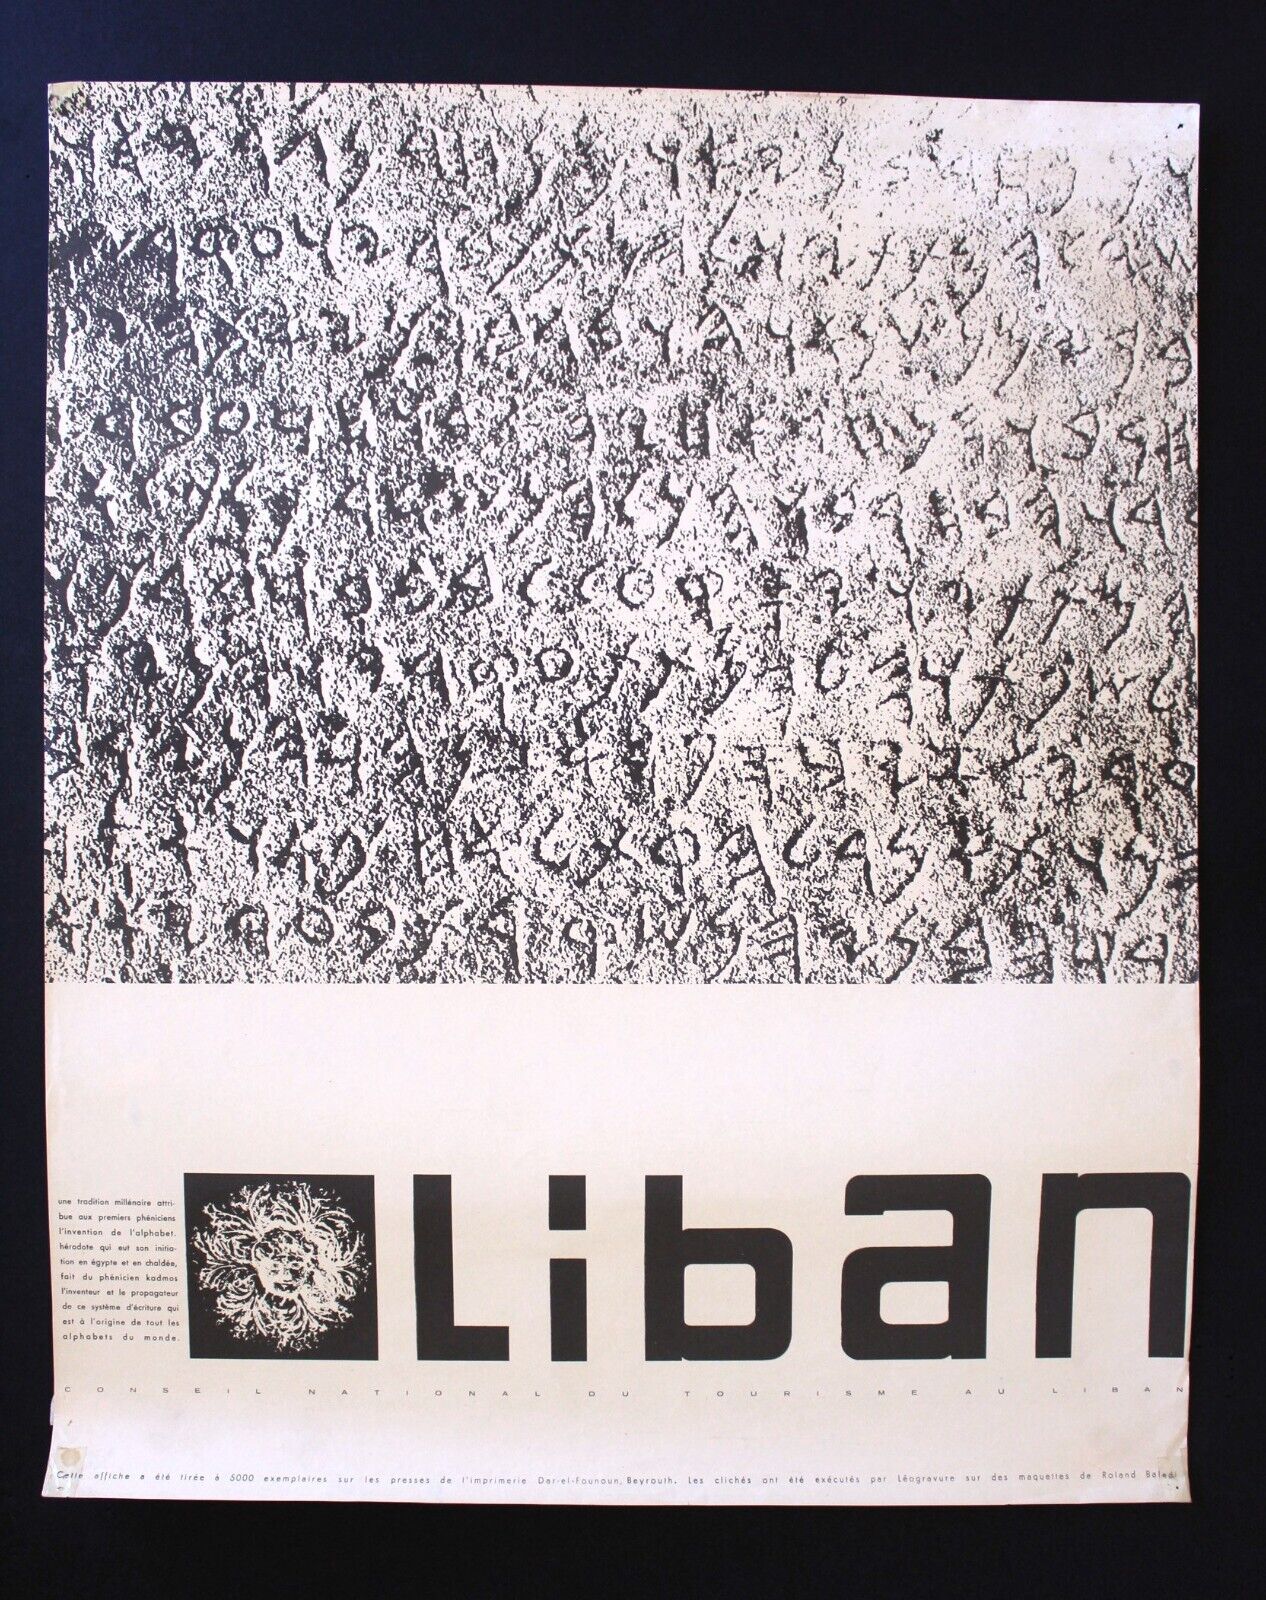 Phoenician Alphabet Liban Beirut Tourism Travel Lebanese ORG Lebanon Poster 60s?